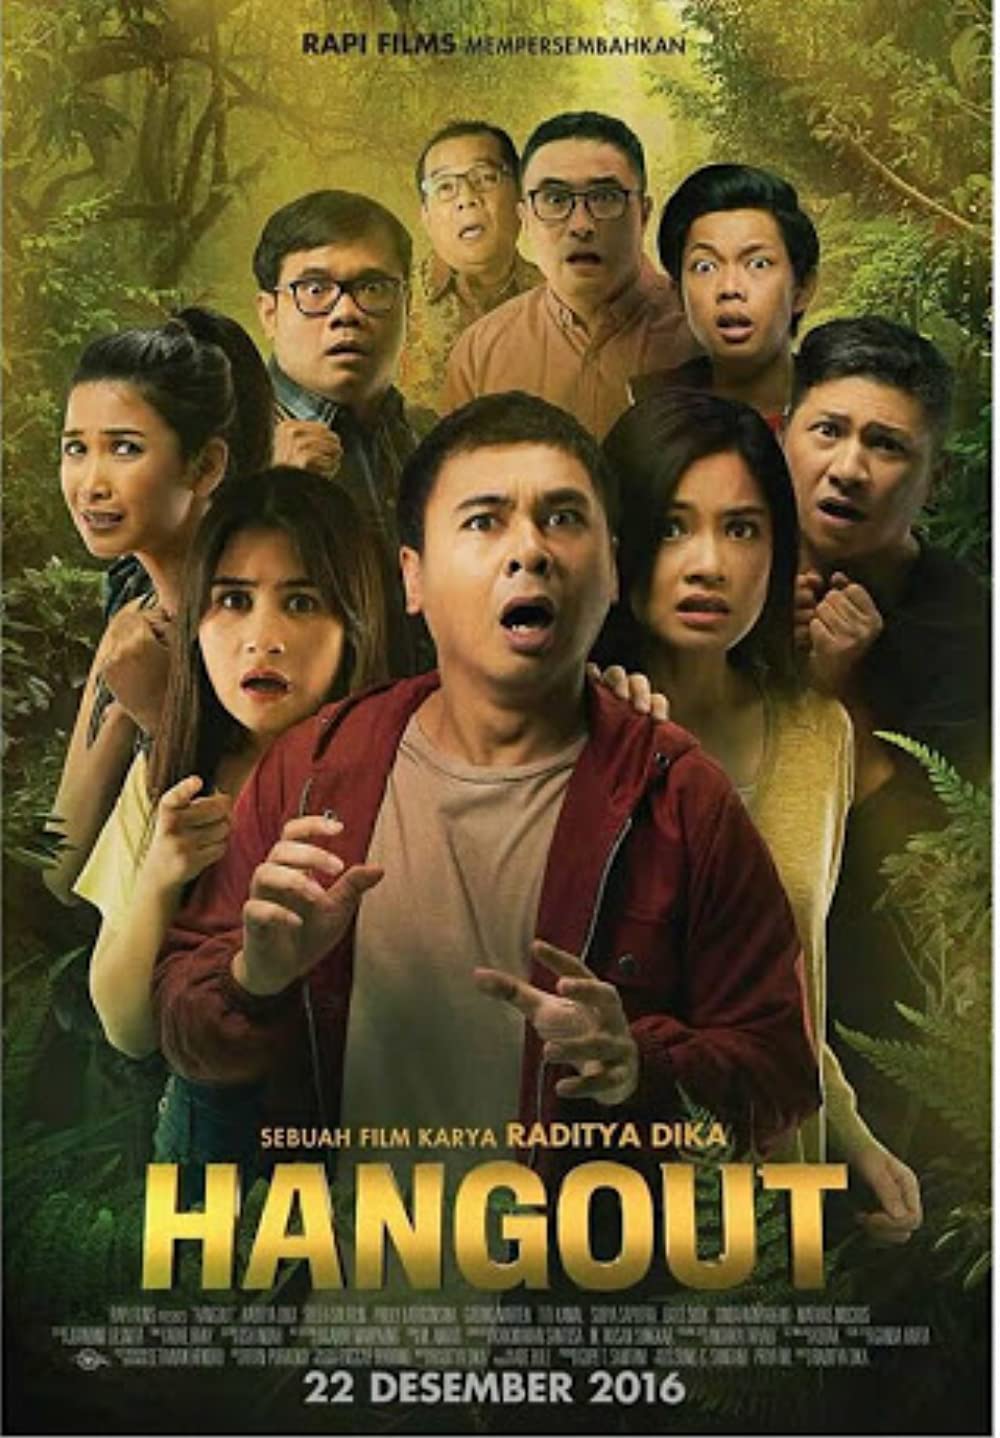 Film Horor Prilly Latuconsina Yang Keren Dan Menegangkan Cocok Jadi Hiburan Akhir Pekan 